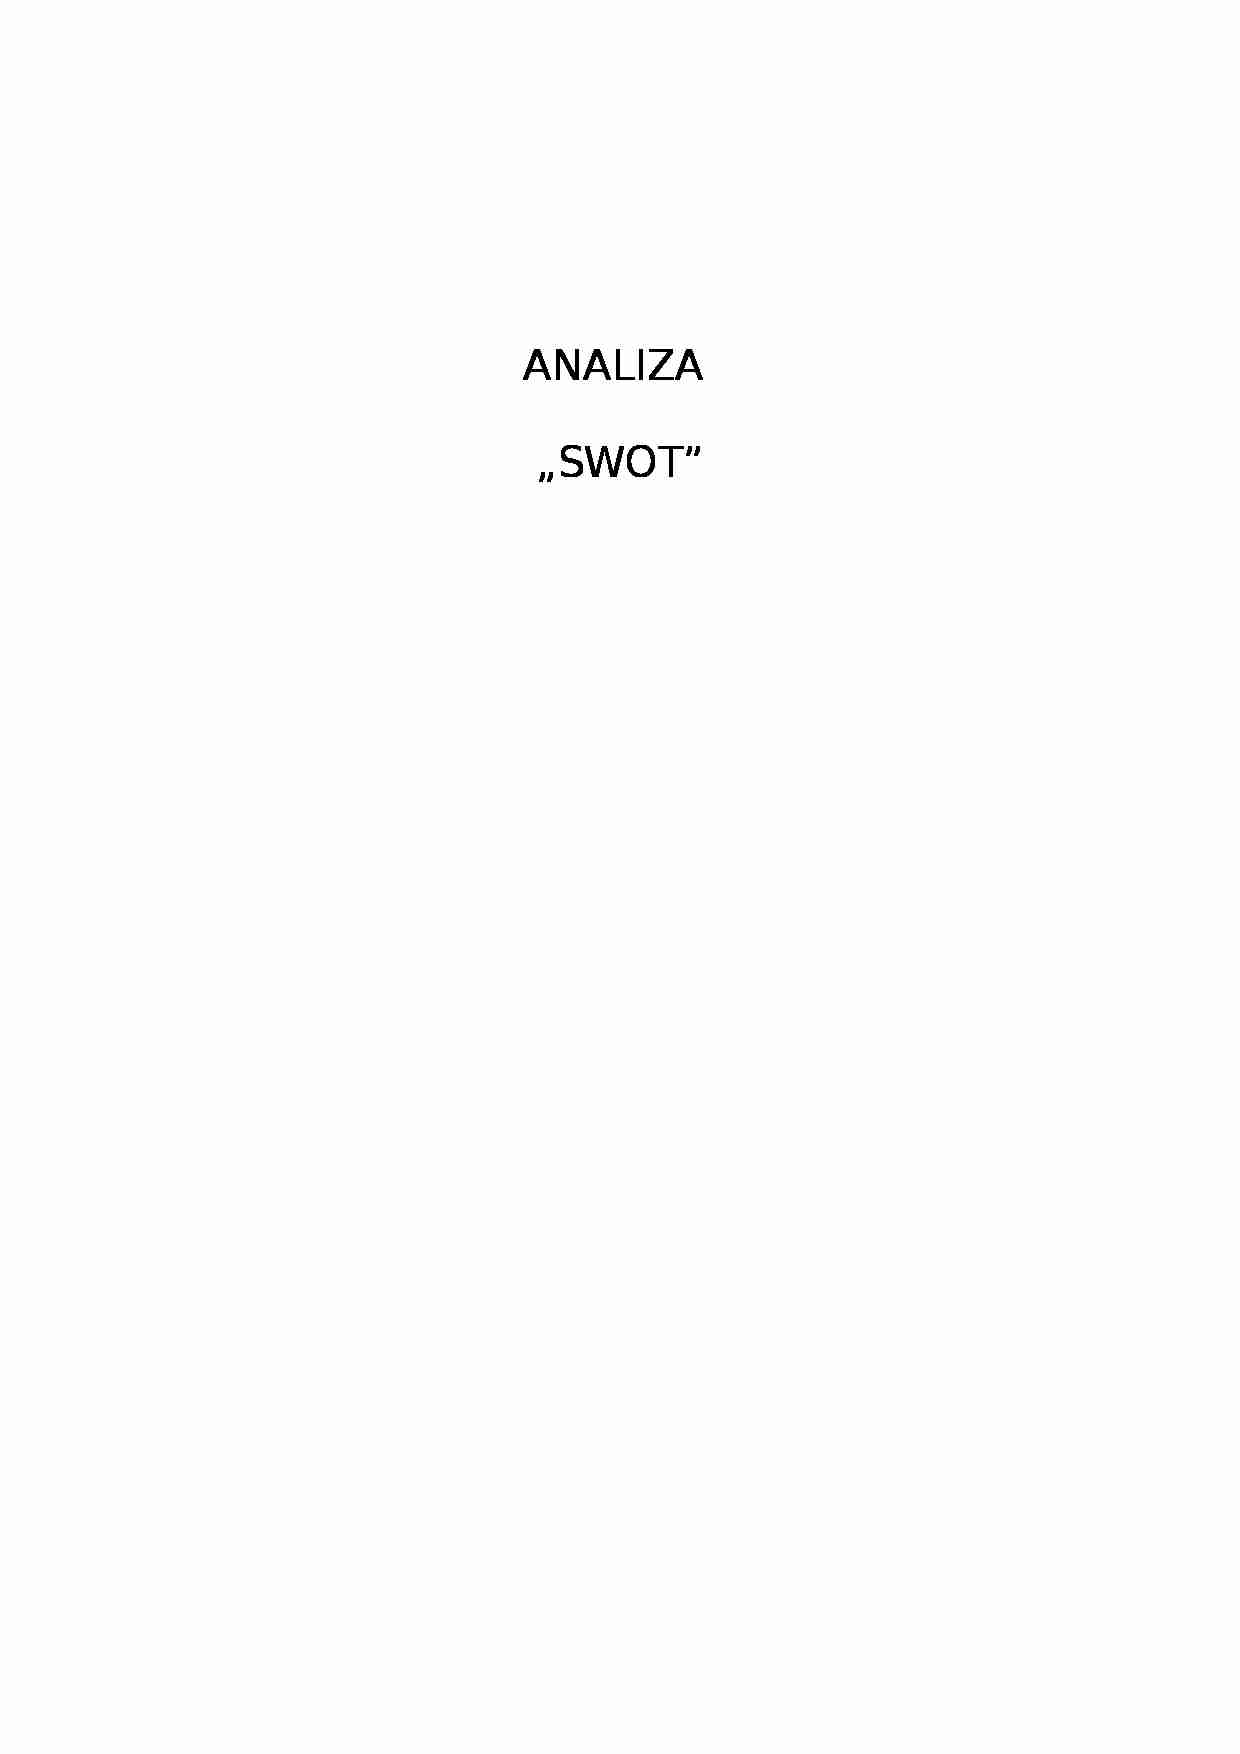 Analiza SWOT - projekt przykładowy - strona 1